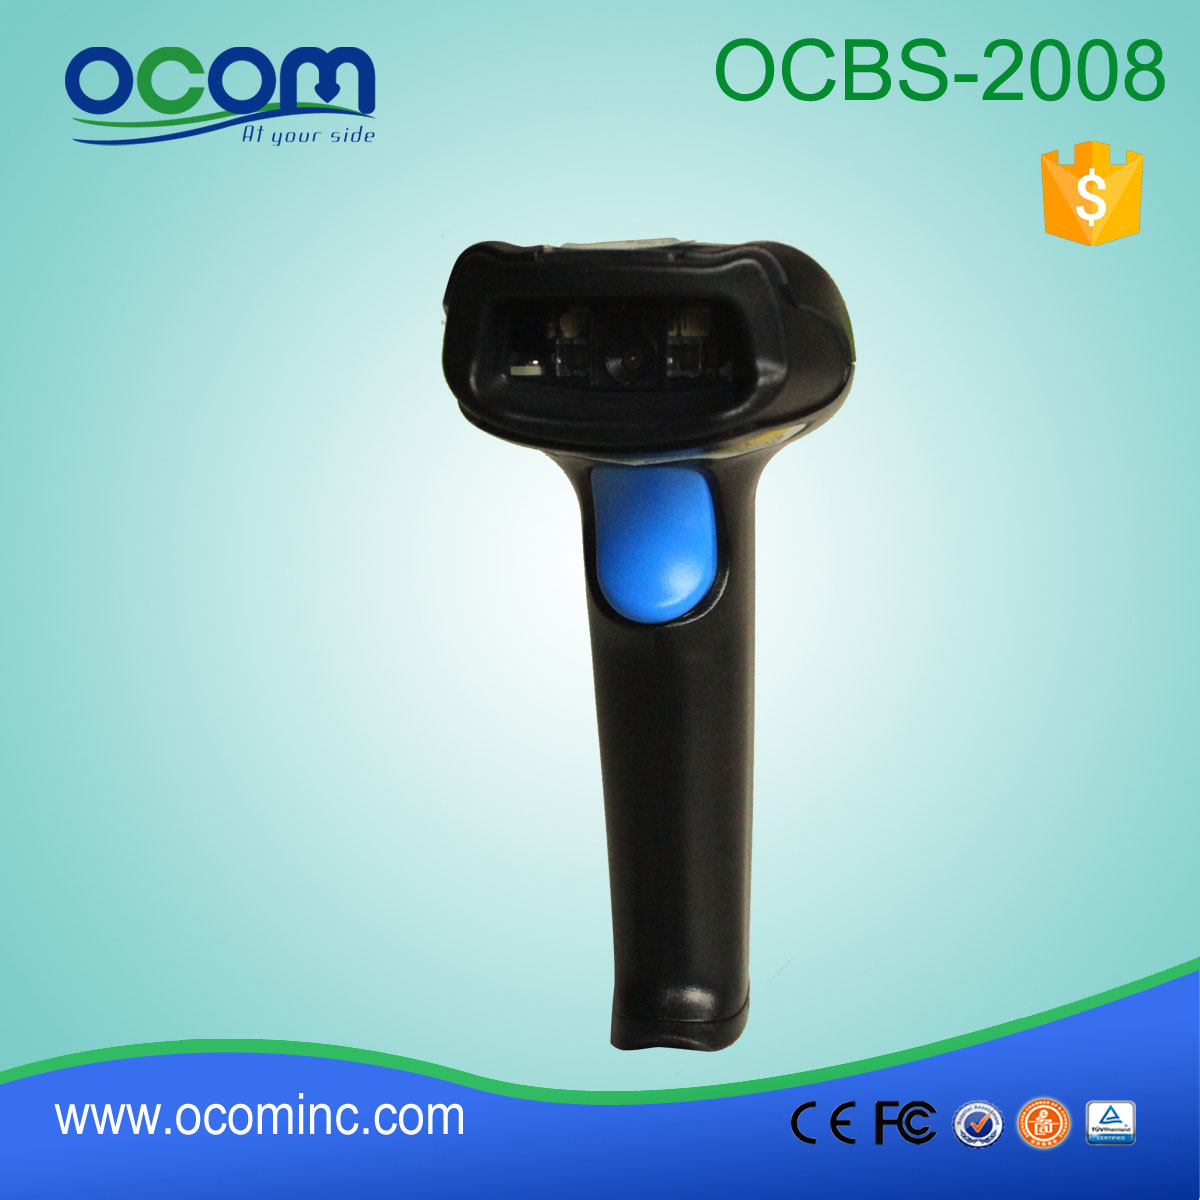 1D / 2D image Barcode Scanner (OCBS-2008)